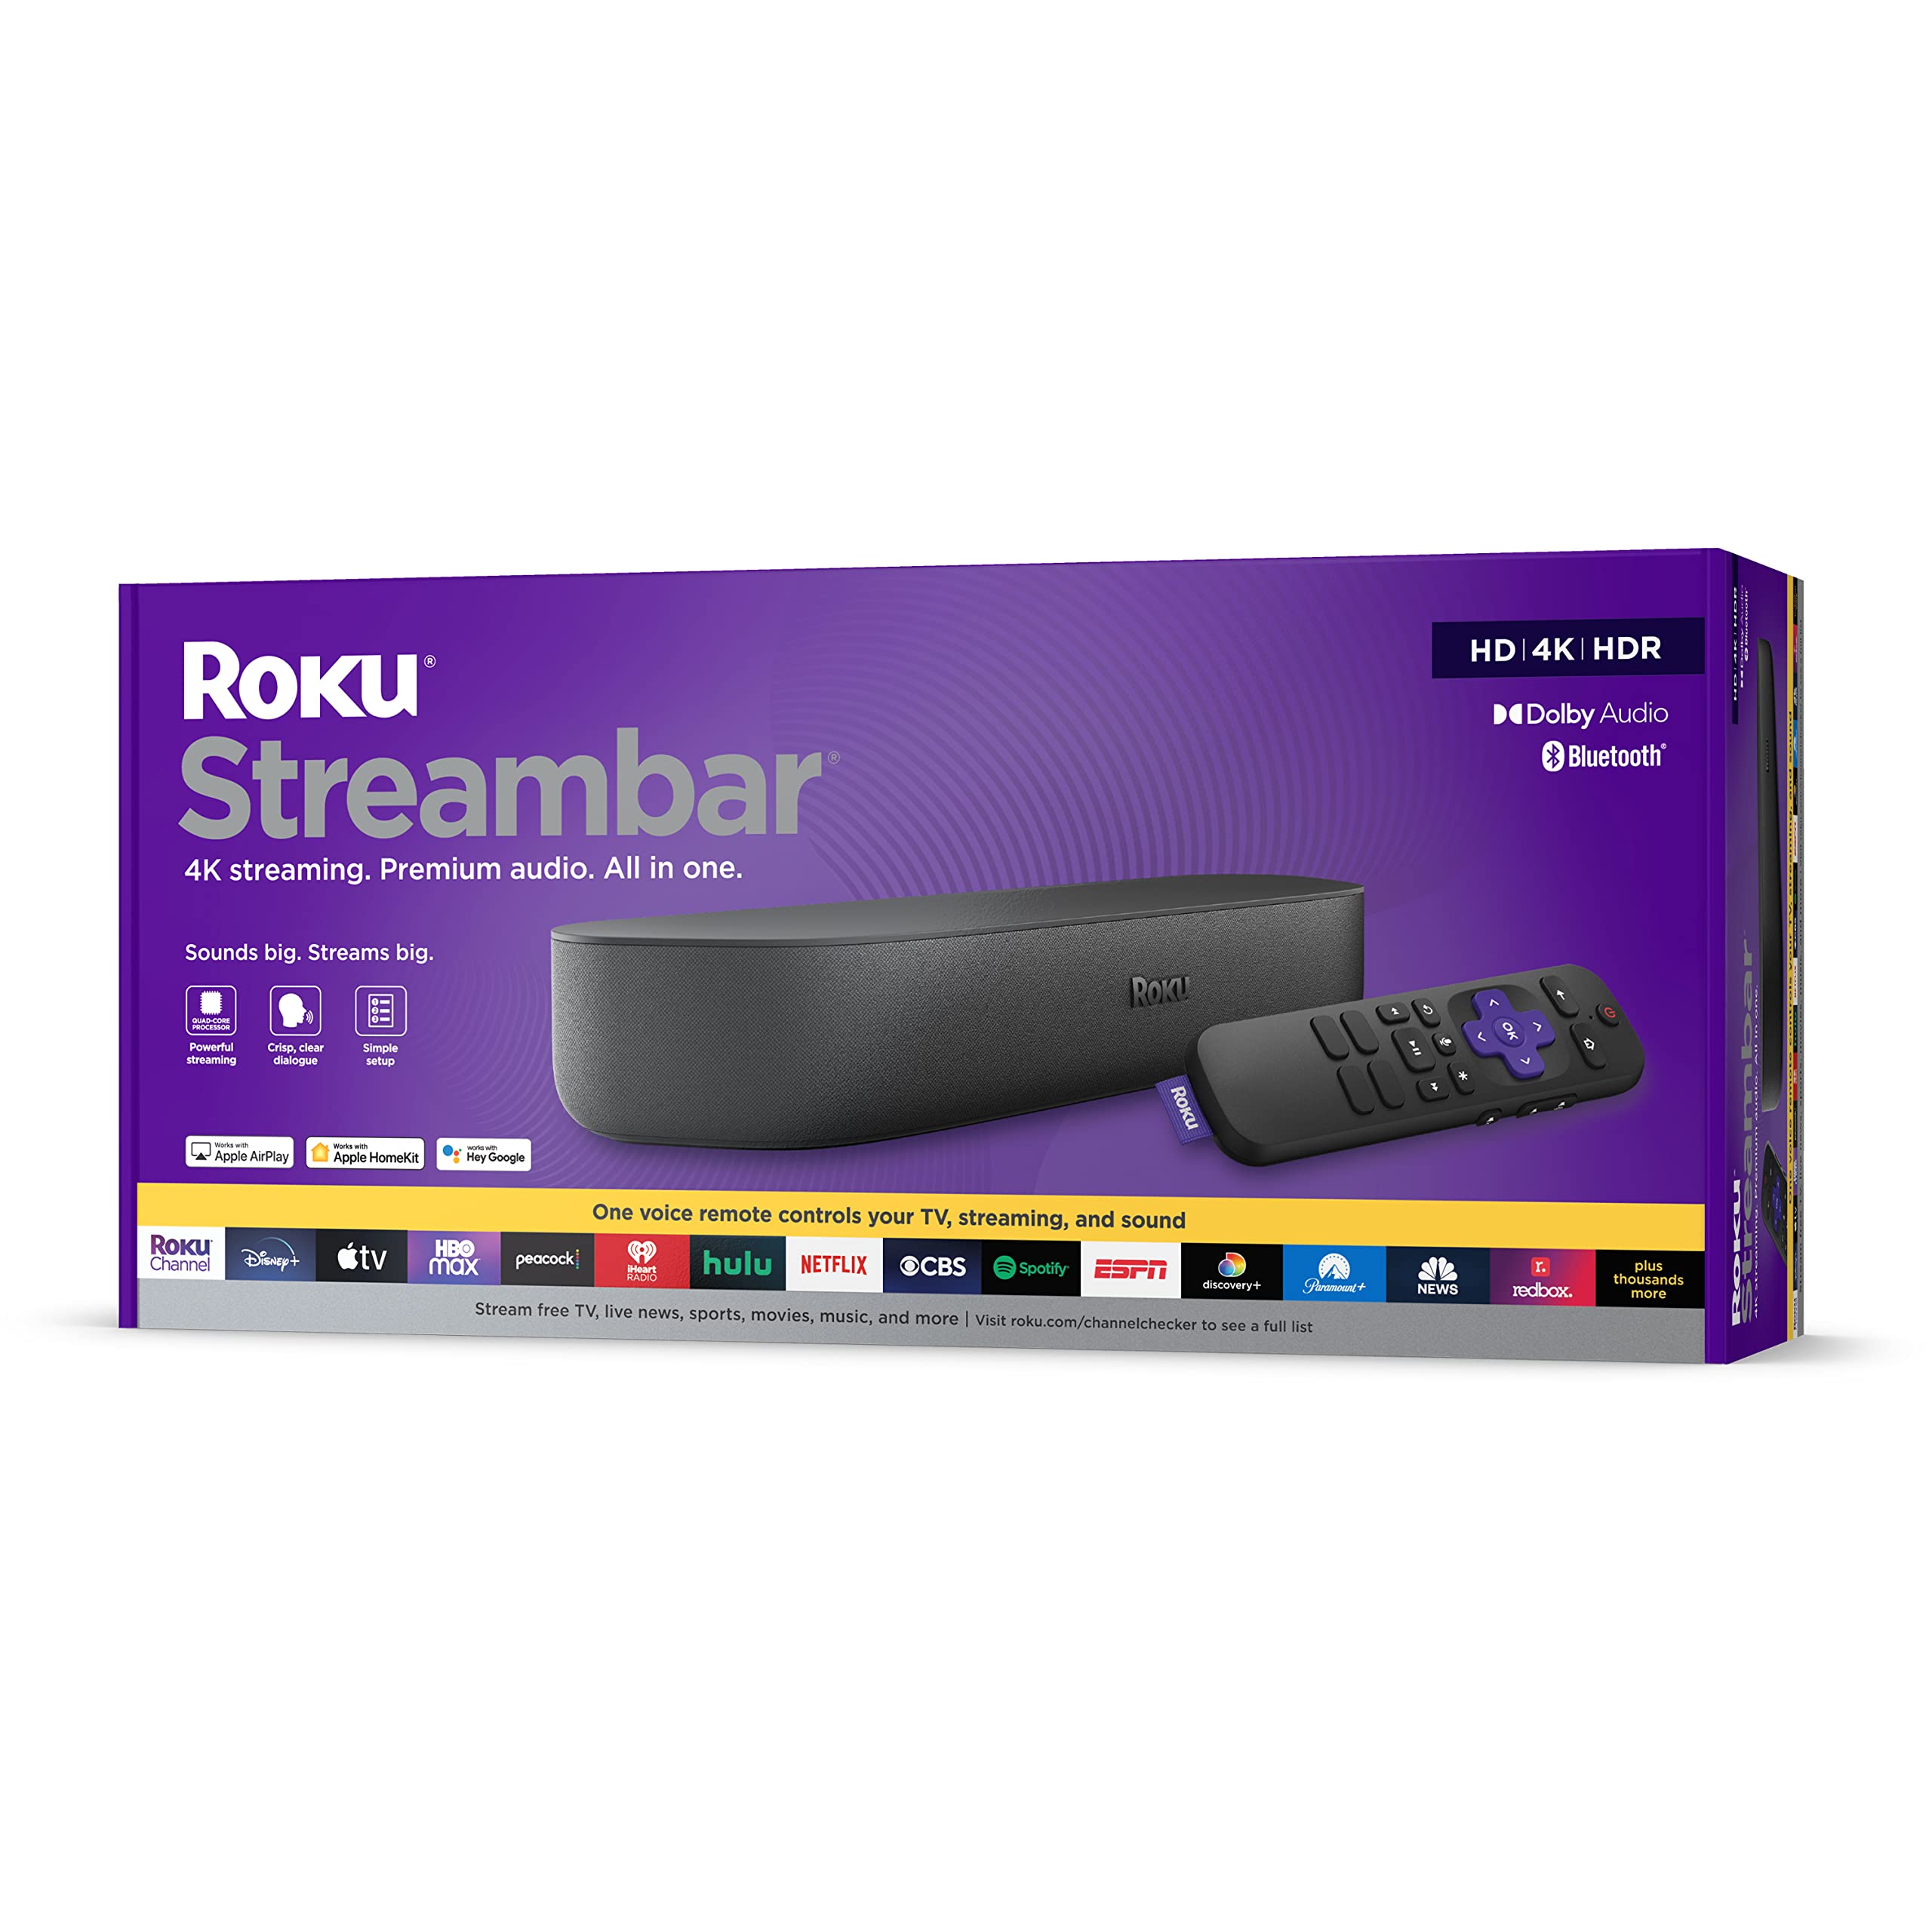 Roku ストリームバー | 4K/HD/HDR ストリーミング メディア プレーヤー & プレミアム オーデ...